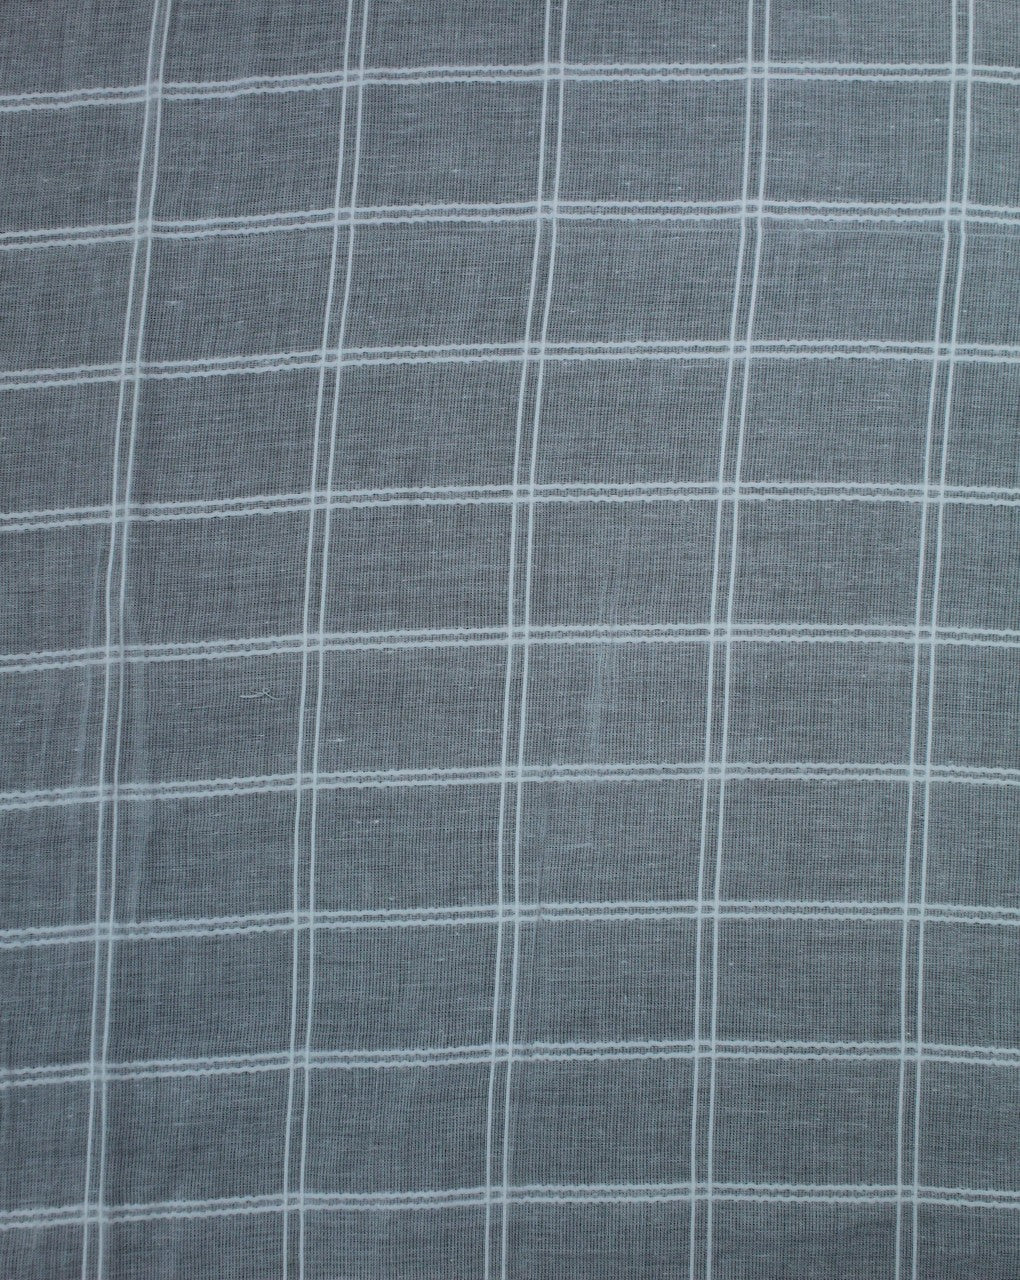 White Square Check Design Cotton Dobby Fabric